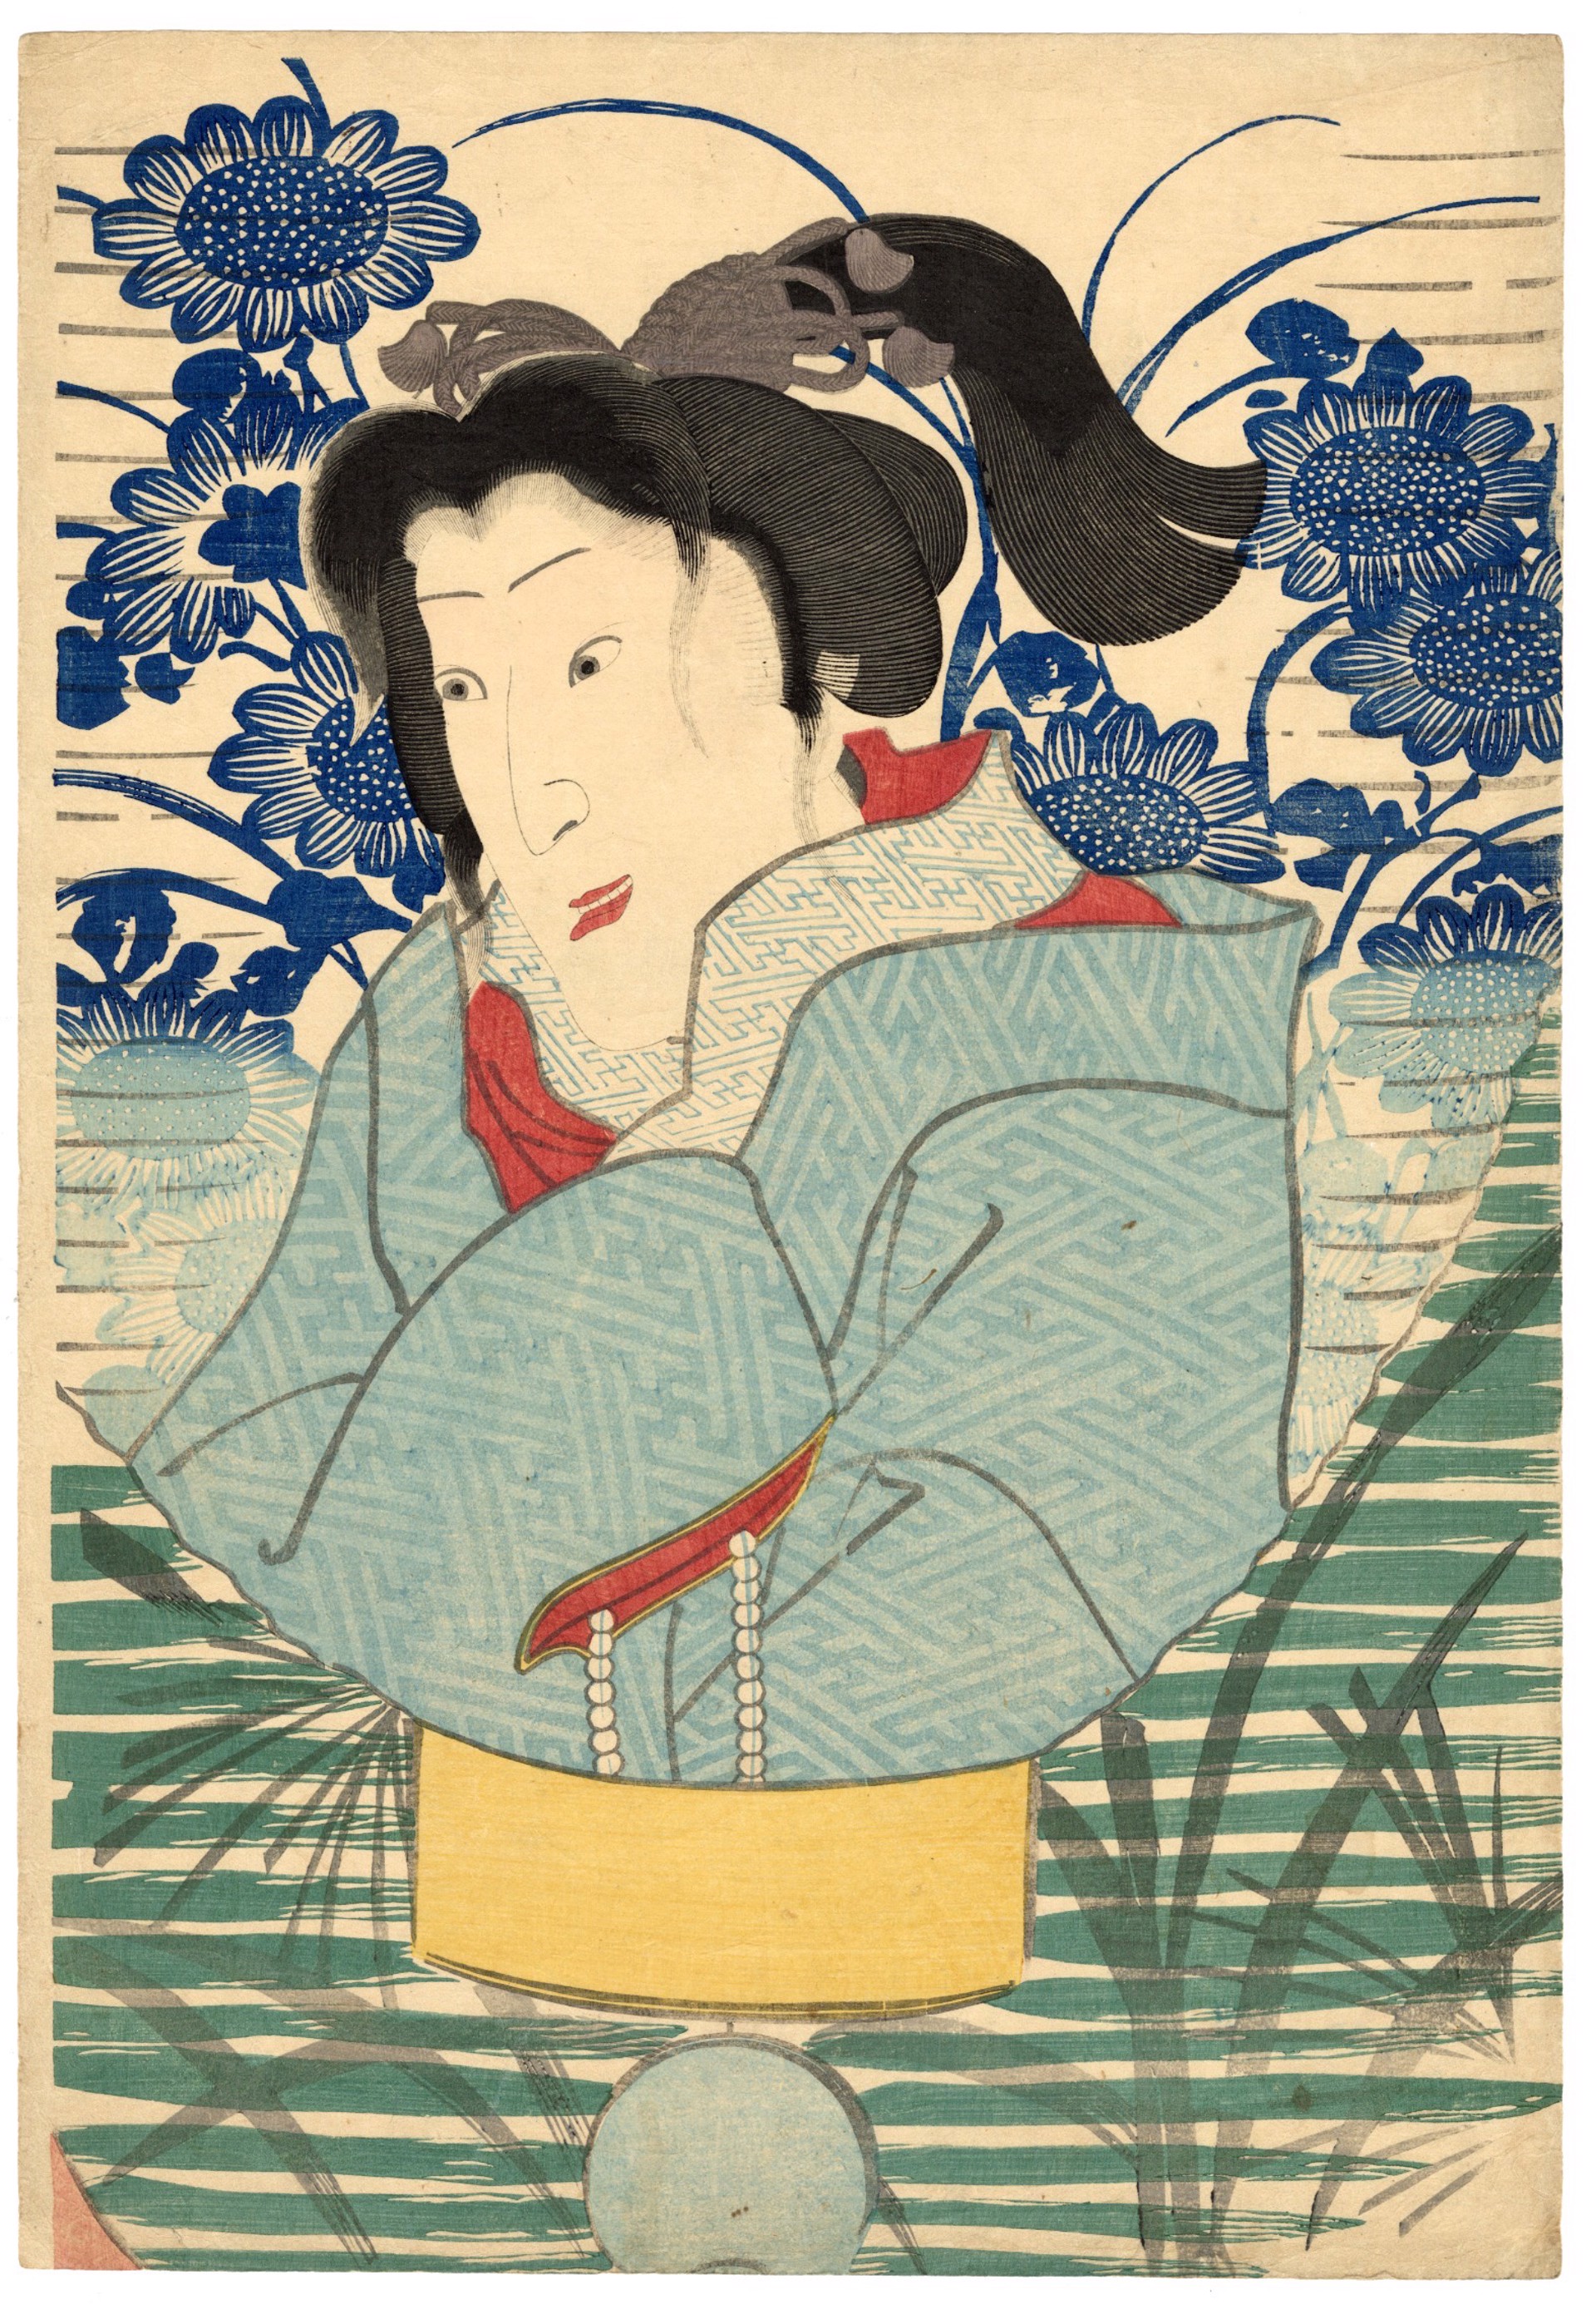 Shini-e (Memorial Print)of Onoe Kikugoro IV by Yoshitoshi